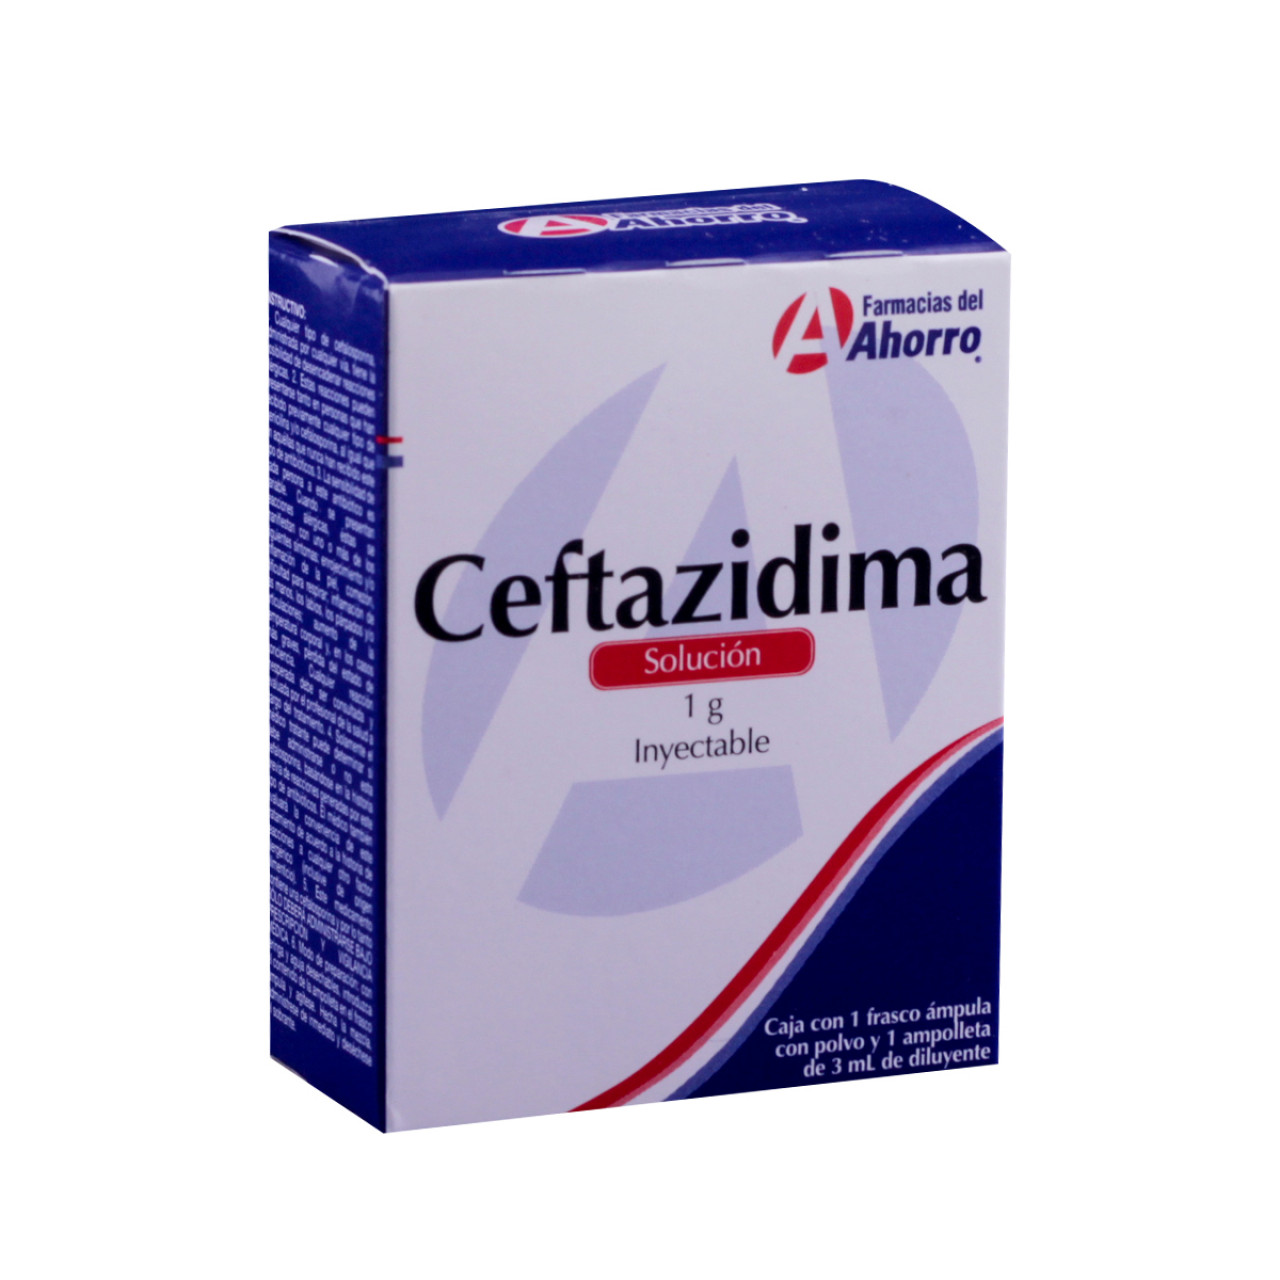 Ceftazidima: ¿Qué es y cuánto cuesta?